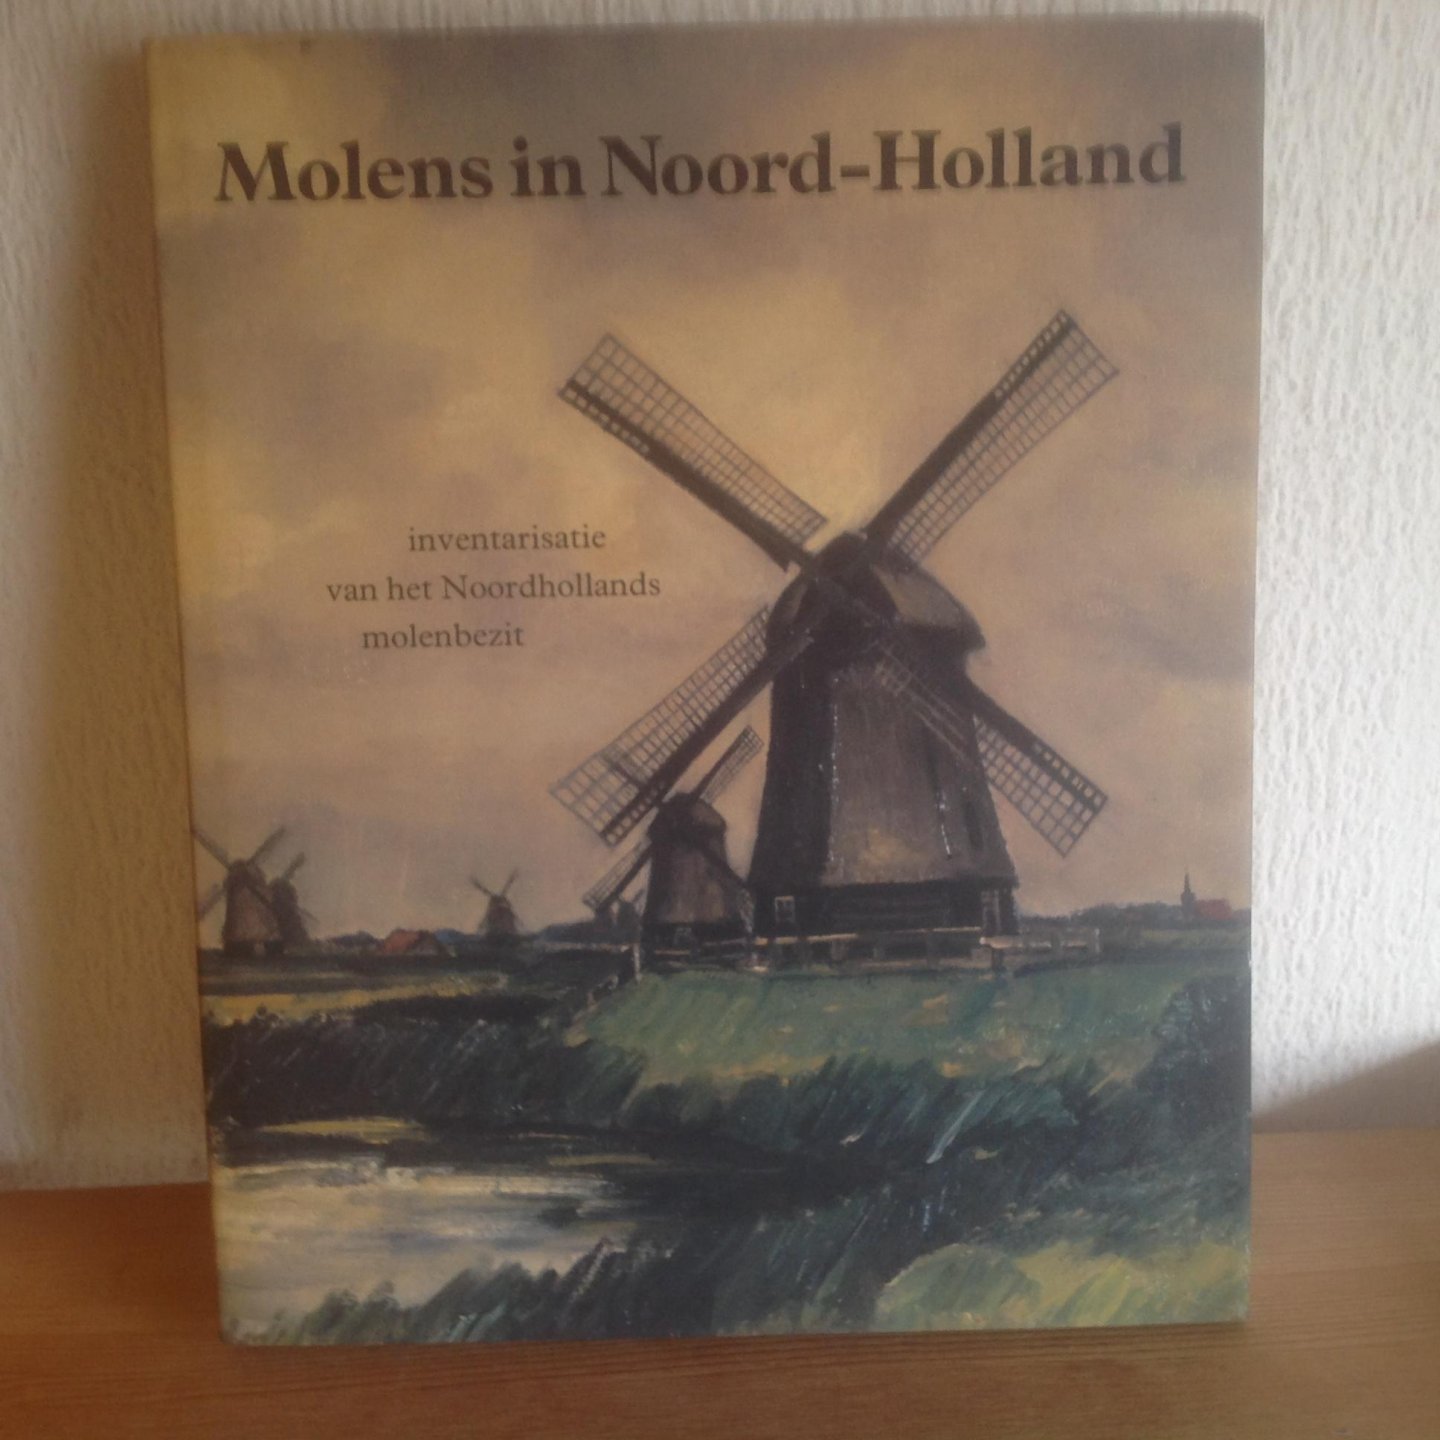  - MOLENS in NOORD-HOLLAND inventarisatie  an het Noordhollands molenbezit